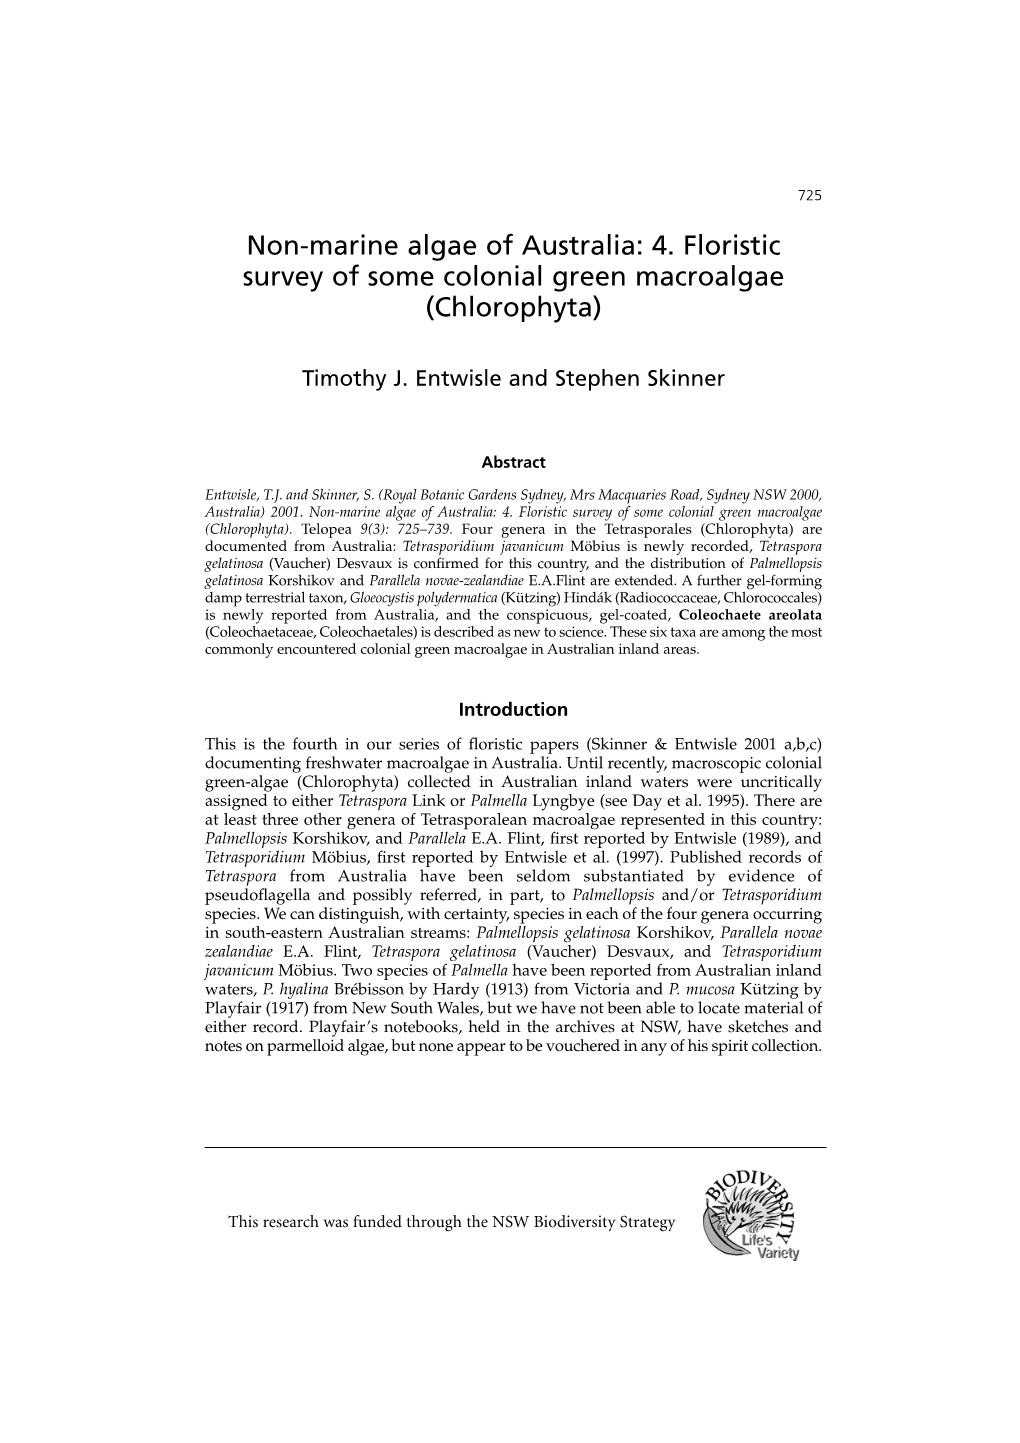 Non-Marine Algae of Australia: 4